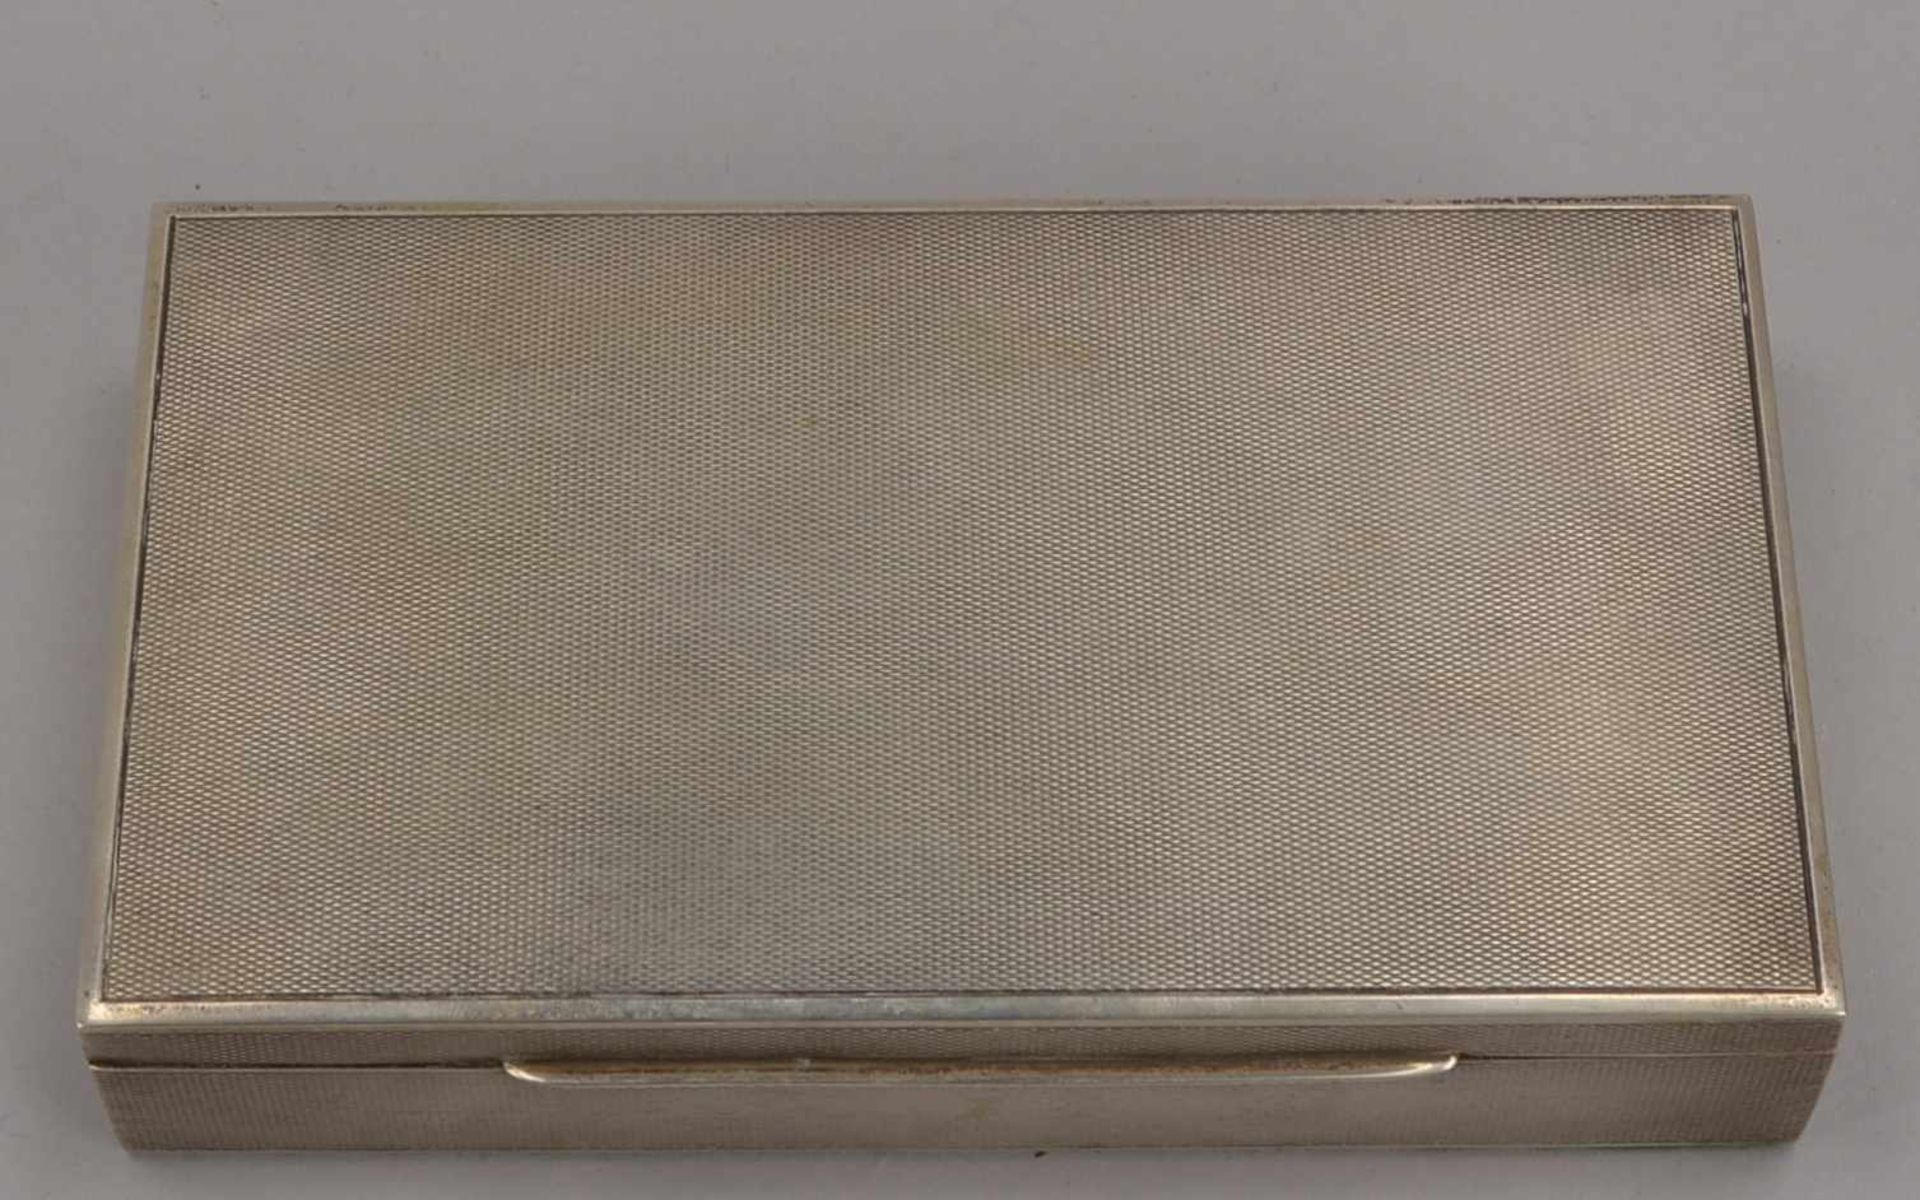 Zigarillo-/Zigarettendose, 835 Silber (punziert), mit Zedernholz-Einlage; Maße 16,5 x 9,3 x 3,3